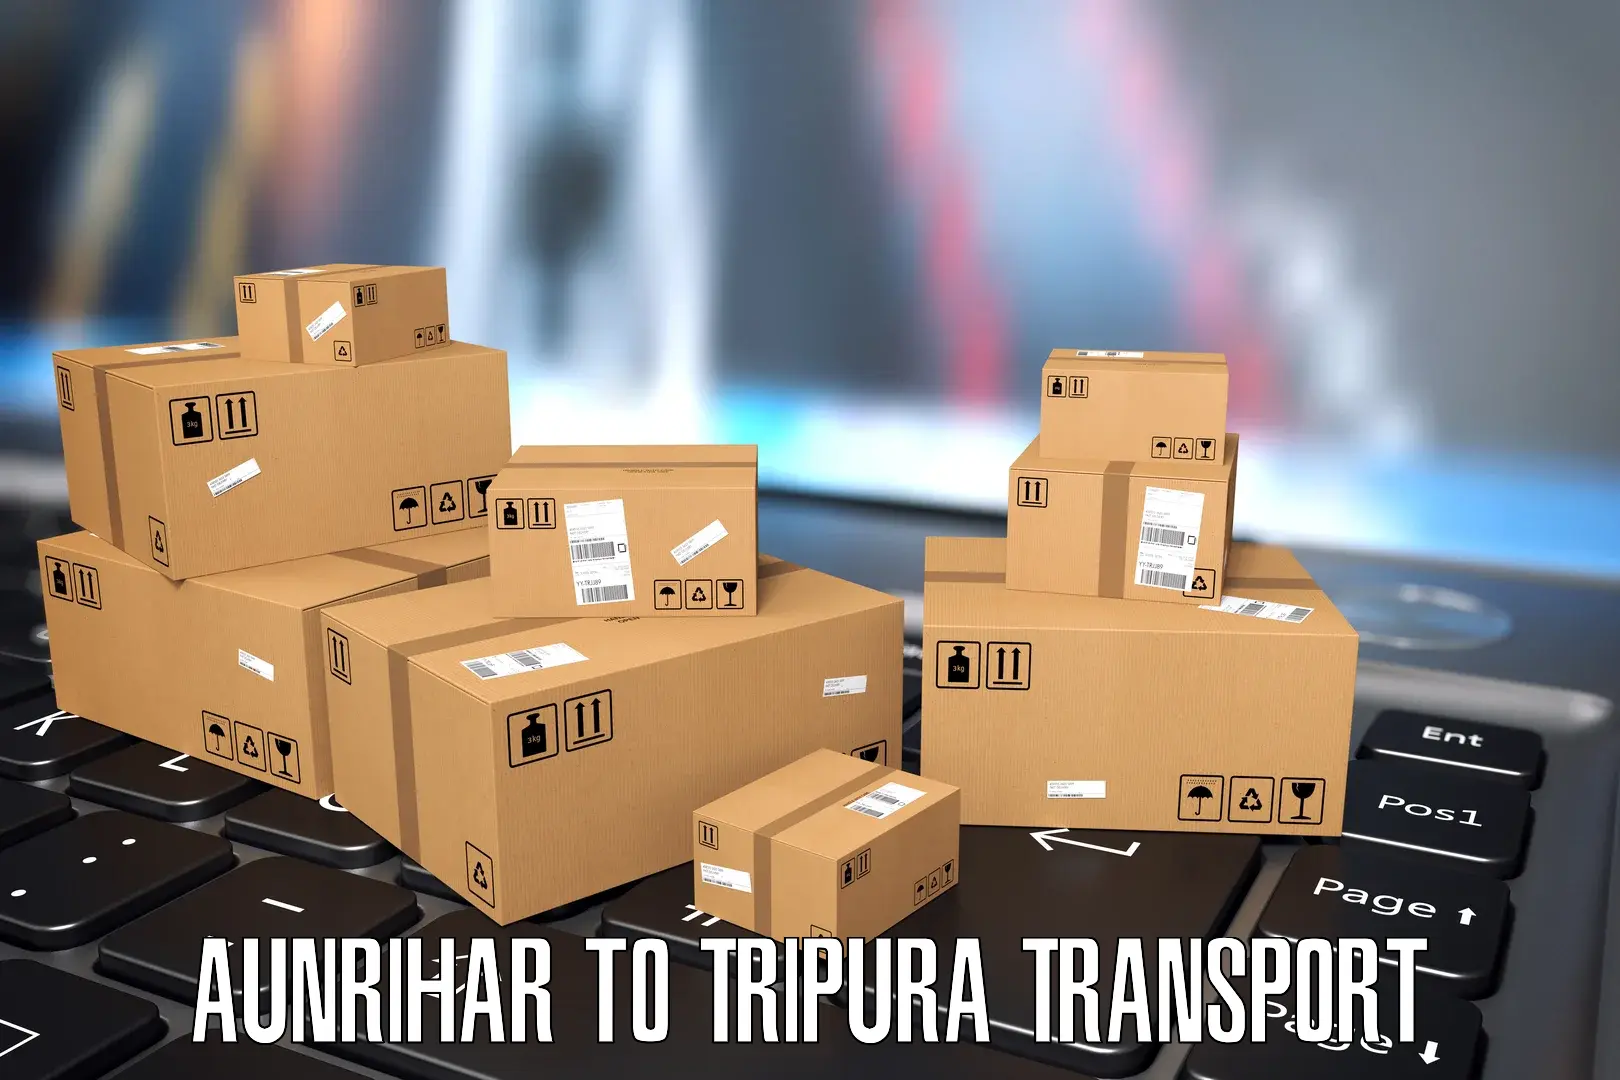 Truck transport companies in India Aunrihar to Tripura